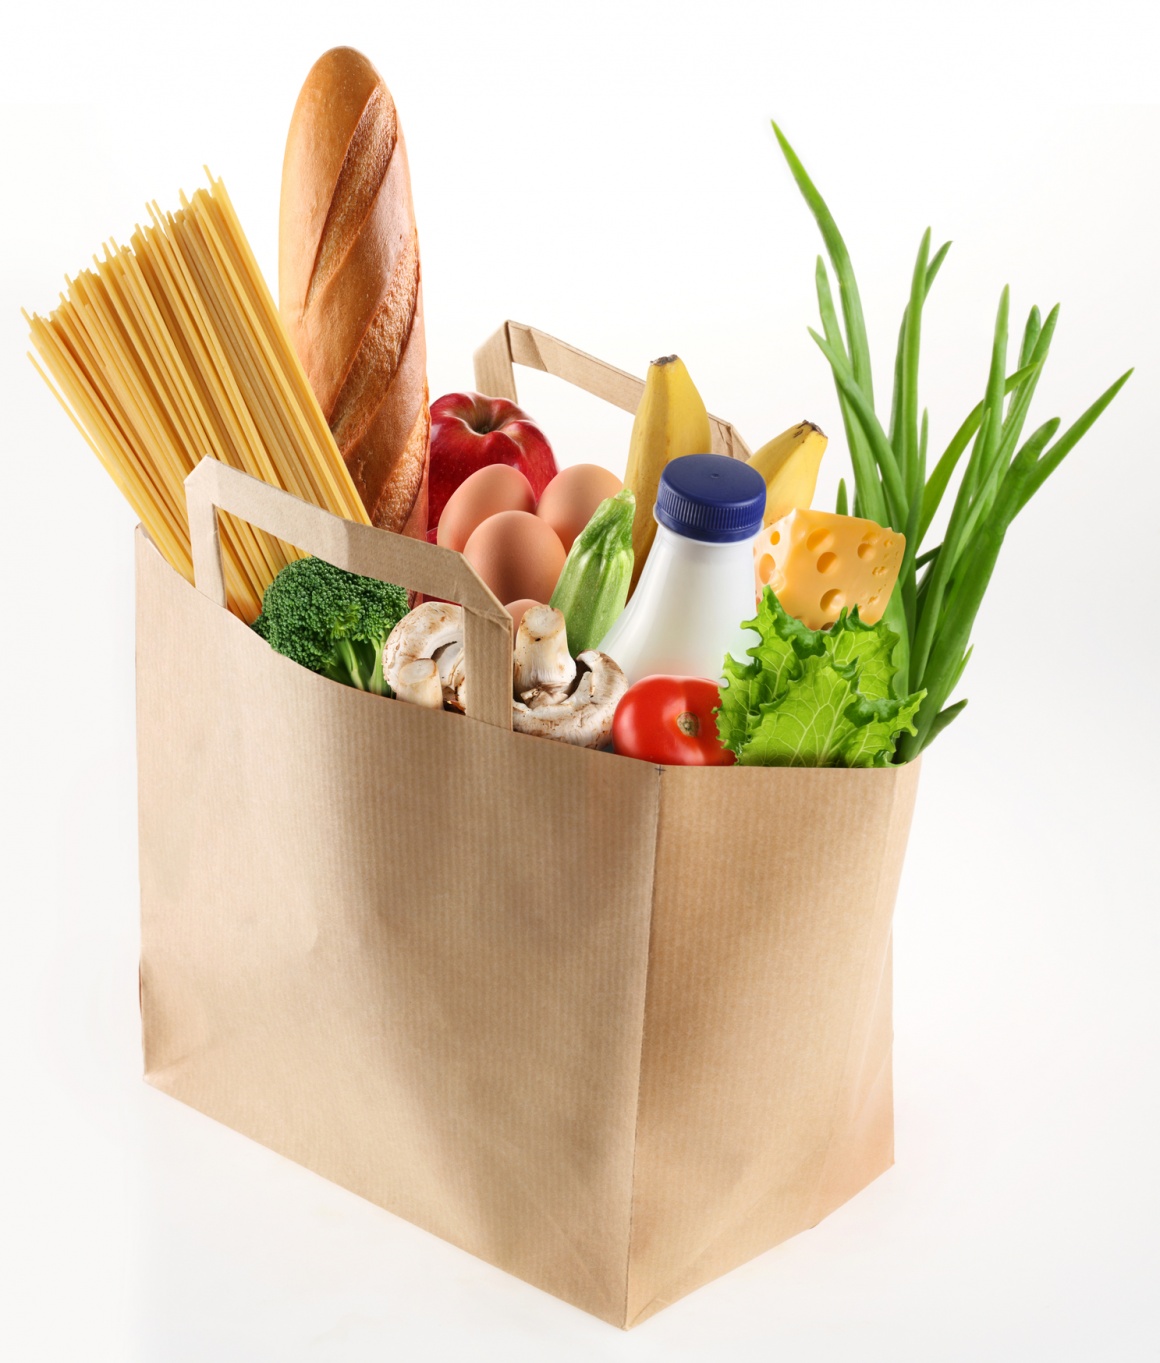 Bag with fresh food